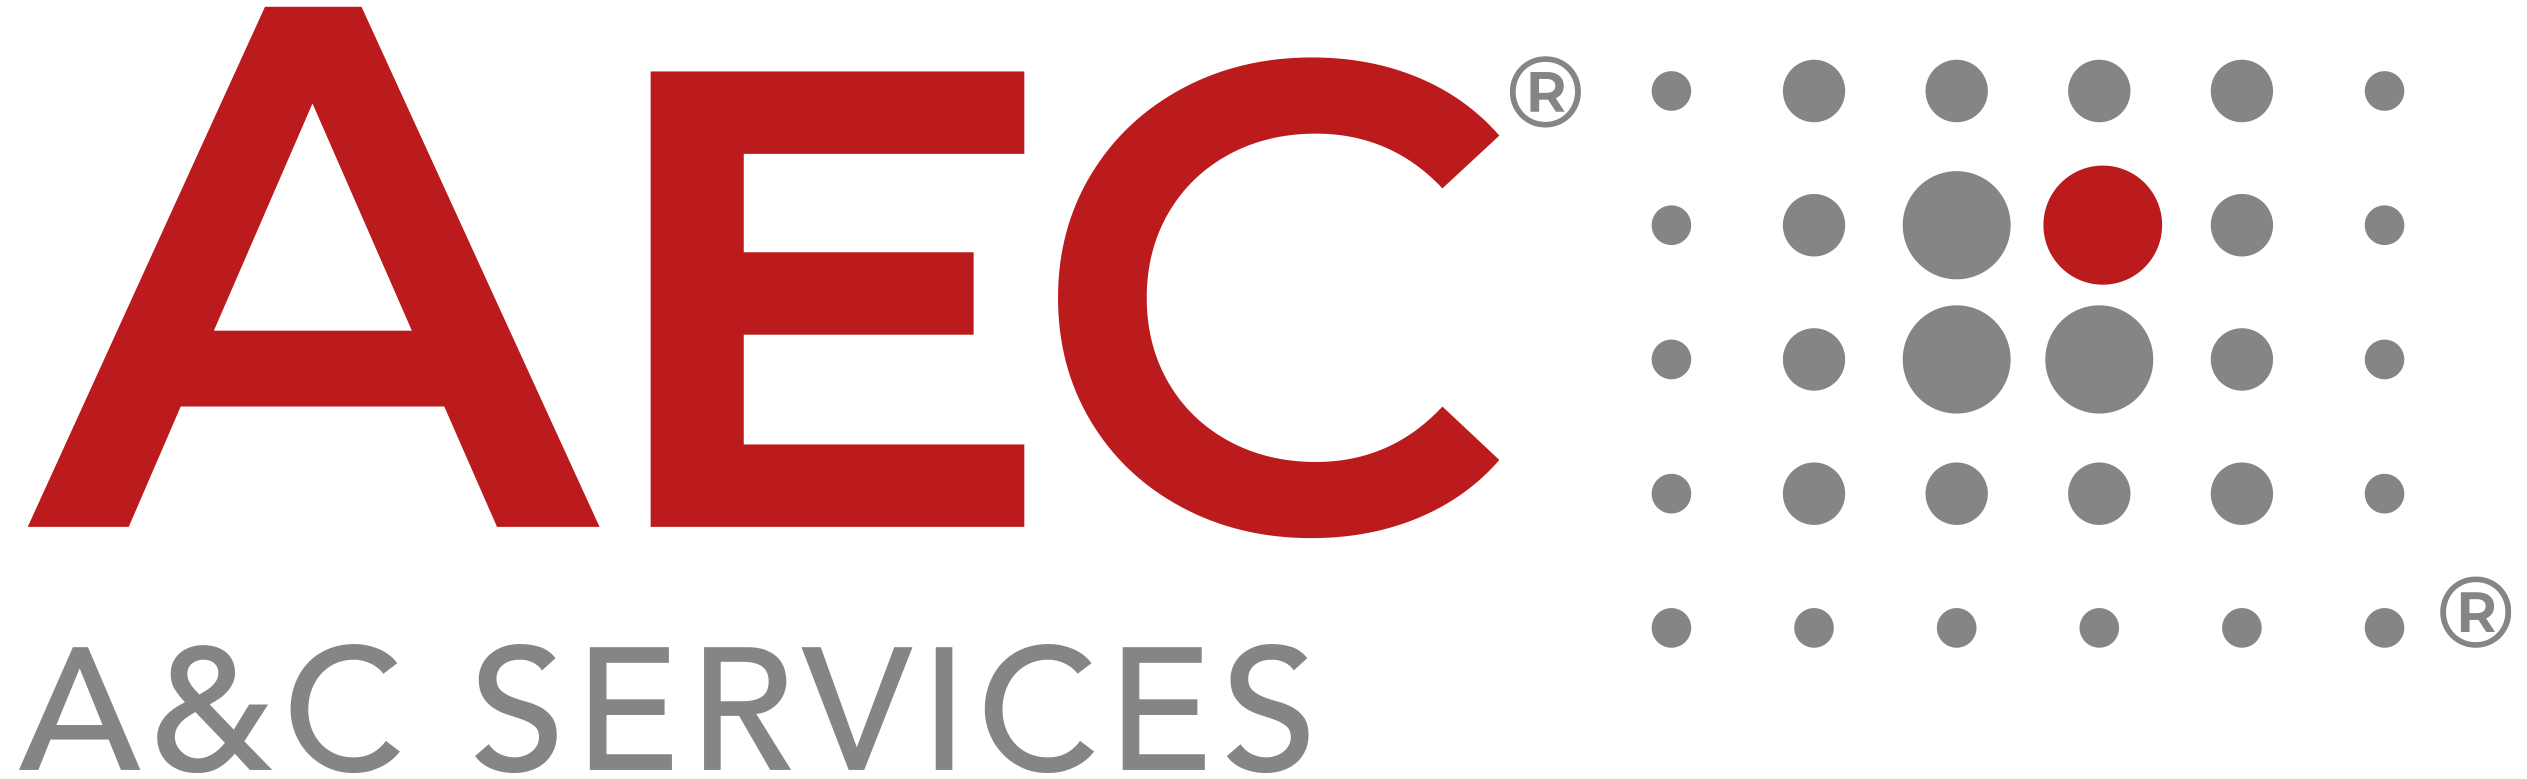 AEC Services